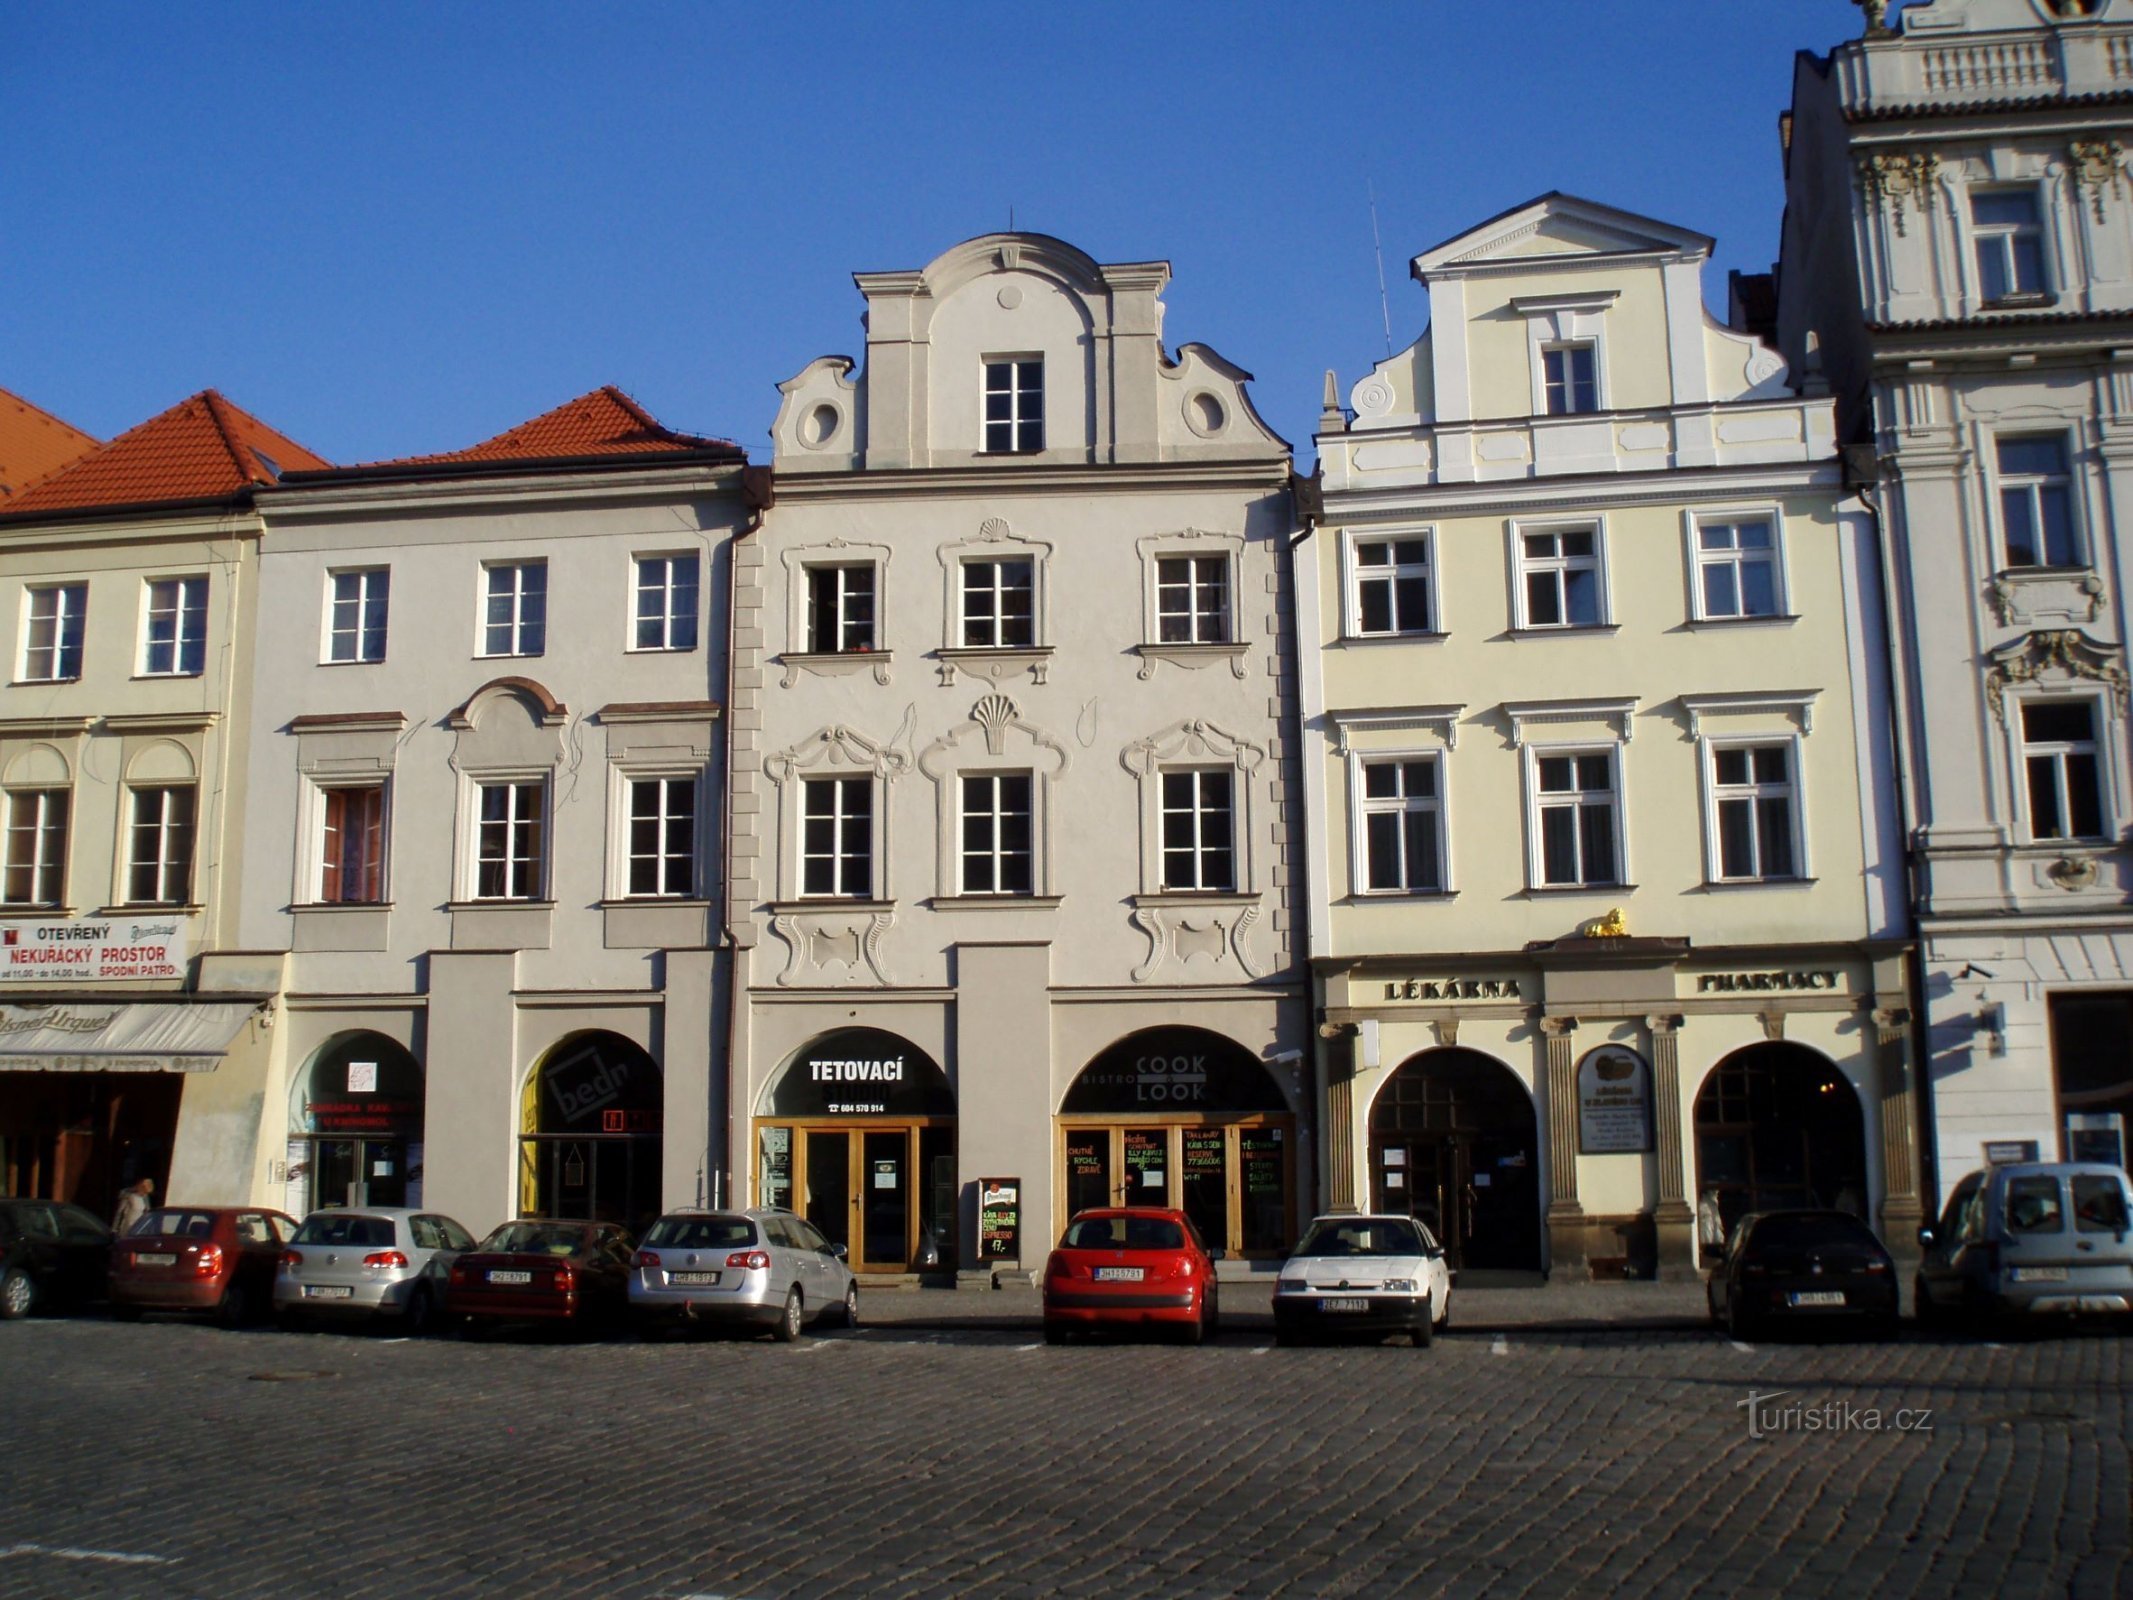 Velké náměstí No. 27-29 (Hradec Králové, 9.4.2012)